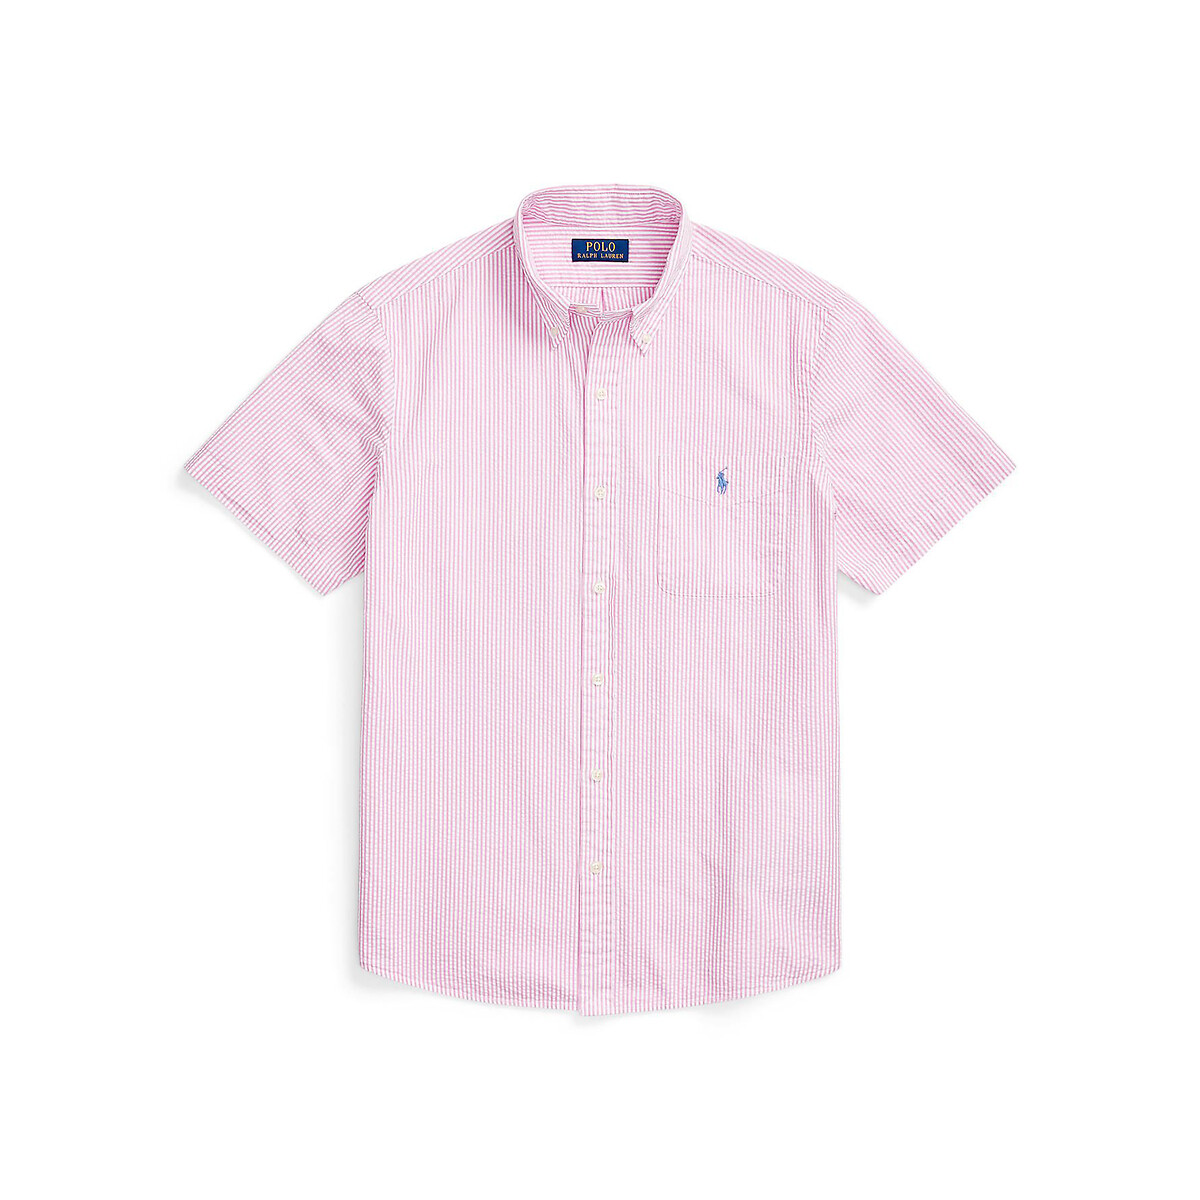 Рубашка Из легкой полосатой ткани с вышитым логотипом M розовый LaRedoute, размер M - фото 4